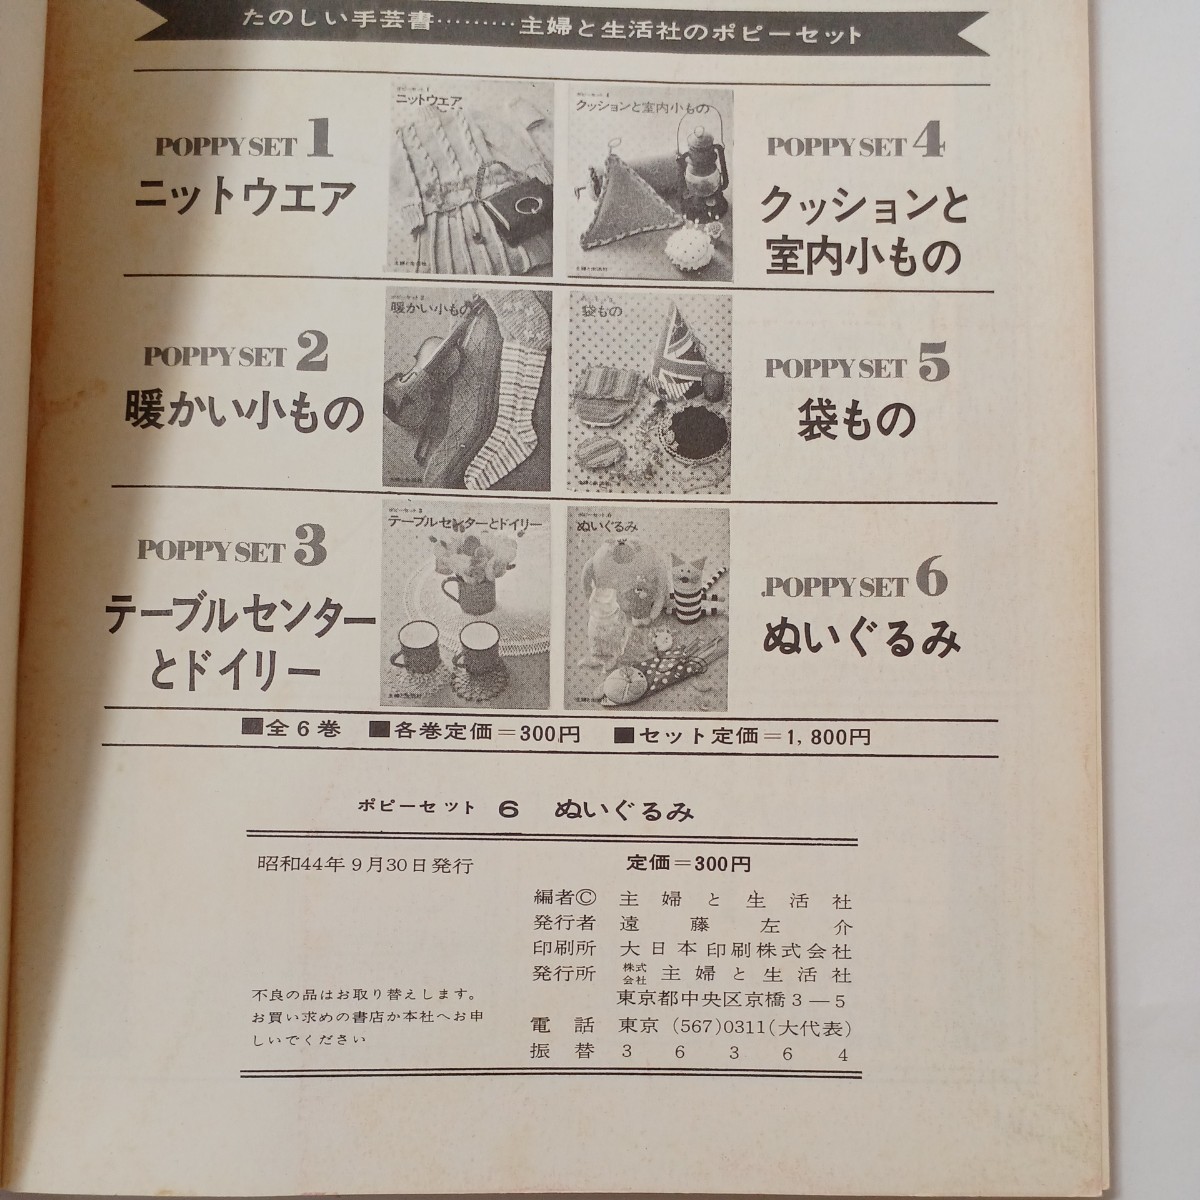 zaa-493♪ぬいぐるみ (ポピーセット6) 昭和44年発行 主婦と生活社 手芸 裁縫 刺繍 (1969/09)